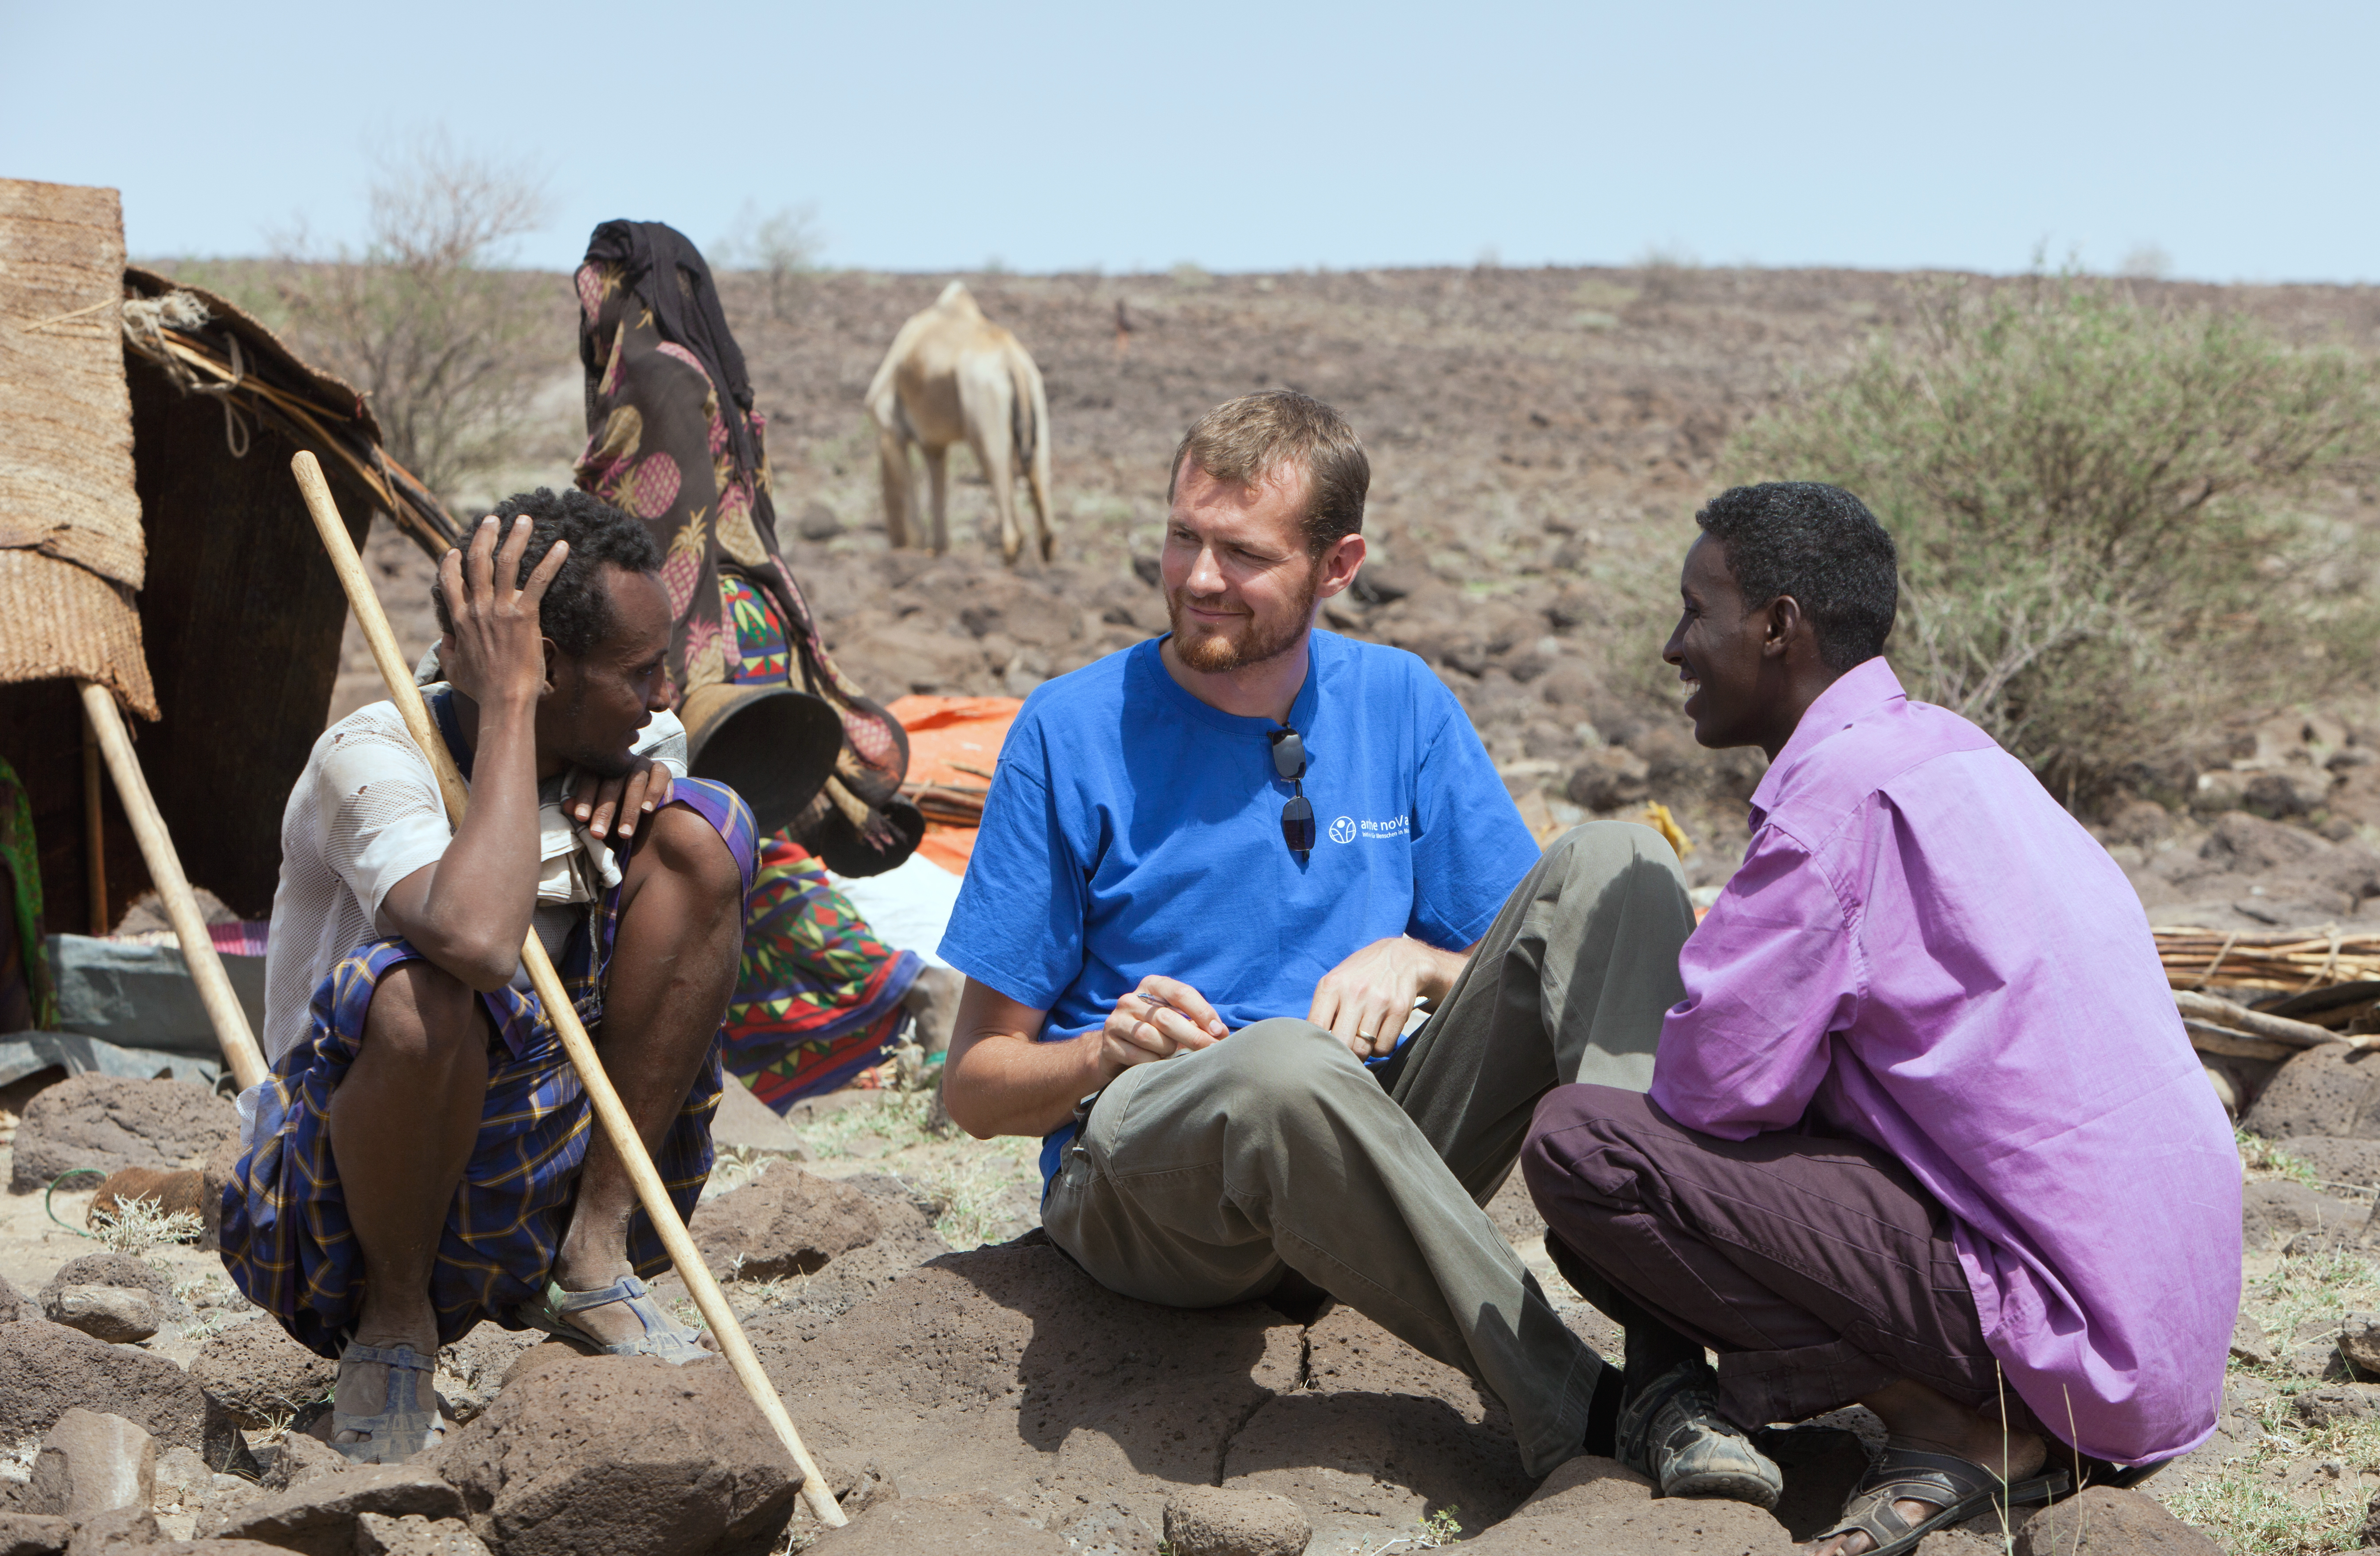 Mathias Anderson (Bild Mitte) sitzt mit zwei anderen Männern auf dem Boden, im Hintergrund Kamele und karge Steppenlandschaft